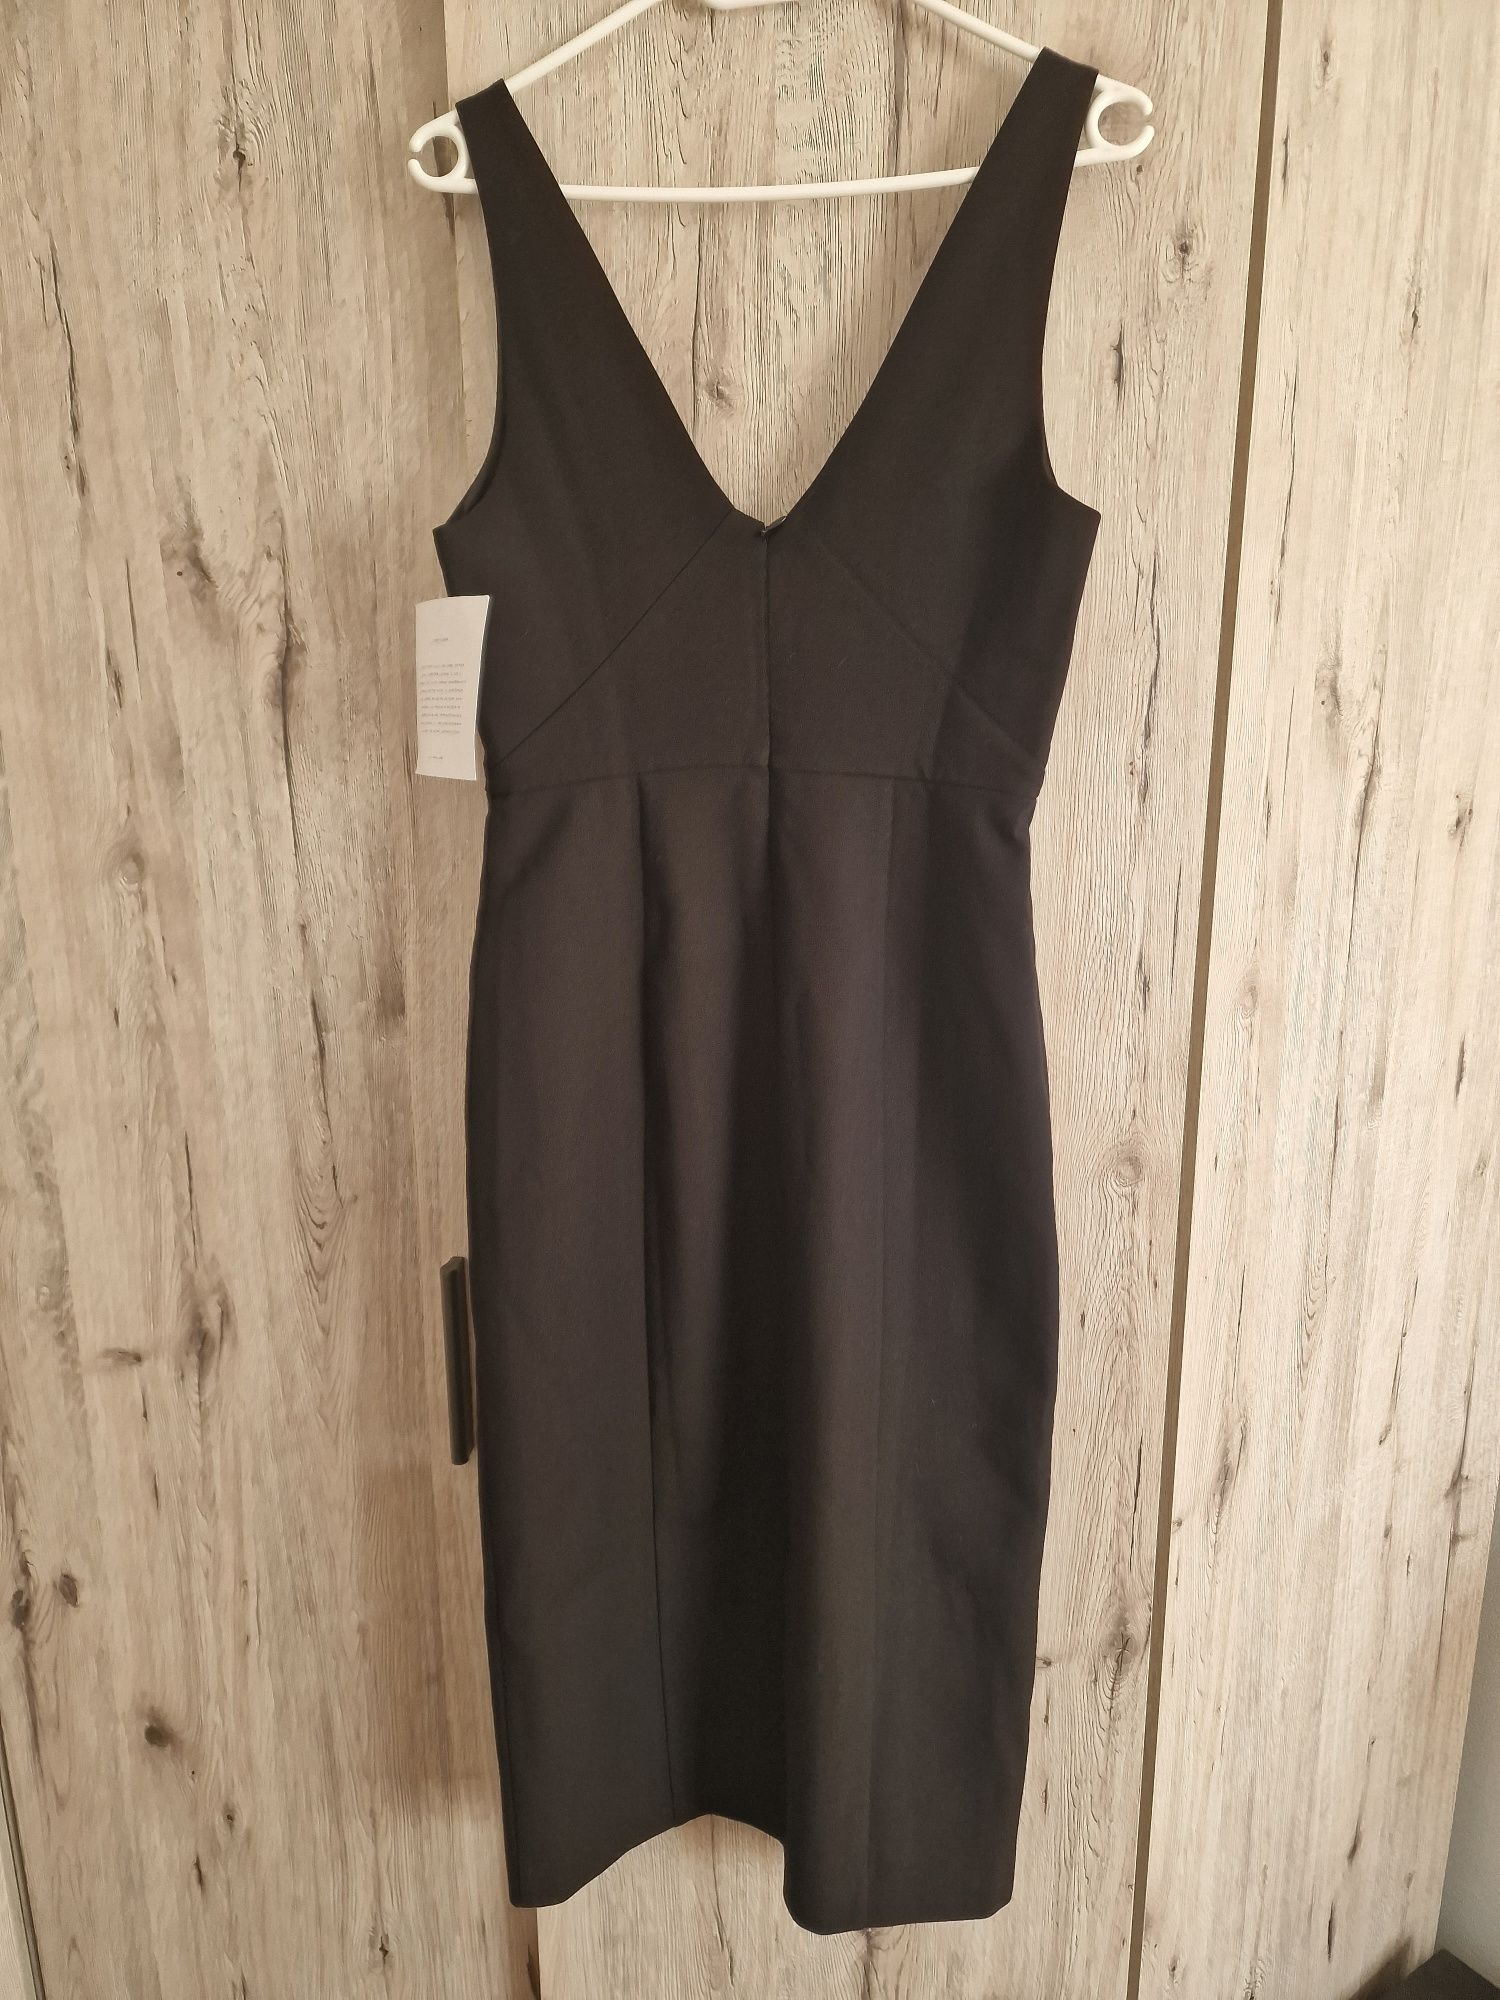 Czarna sukienka Ivy&Oak, rozmiar 34, NOWA